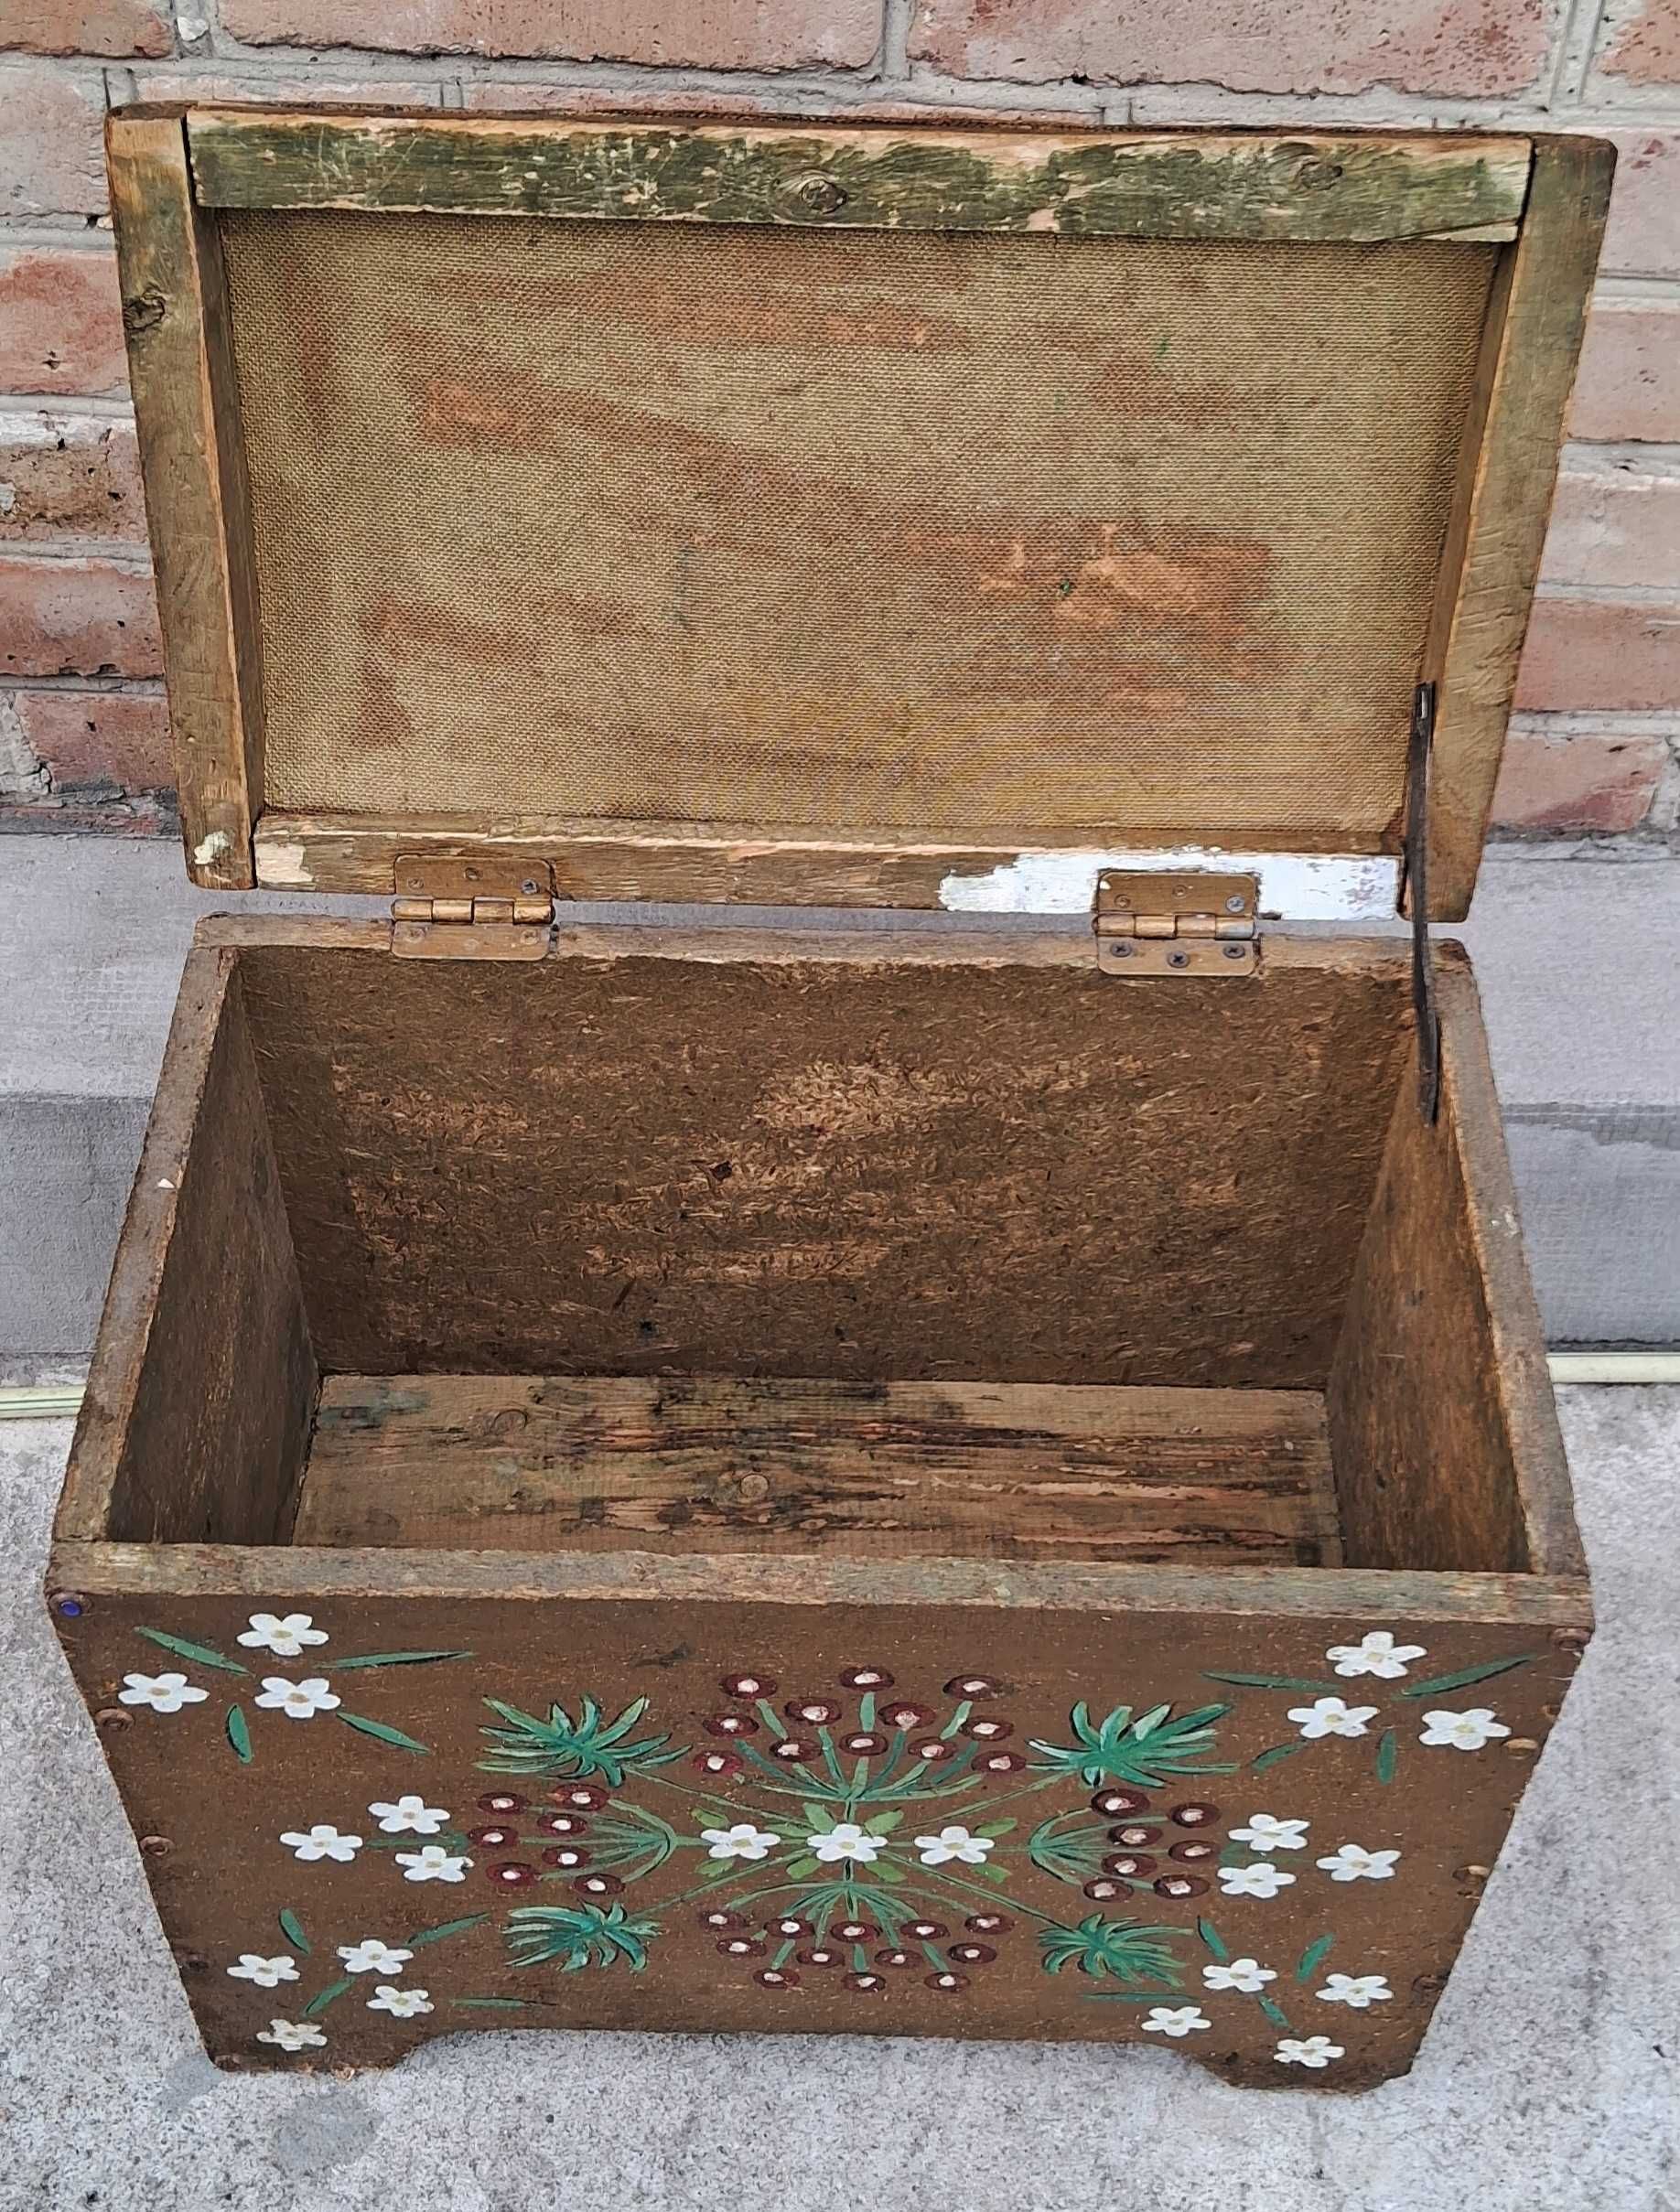 Скриня дерев'яна (сундук) ручної роботи в українському стилі, 49х42х30